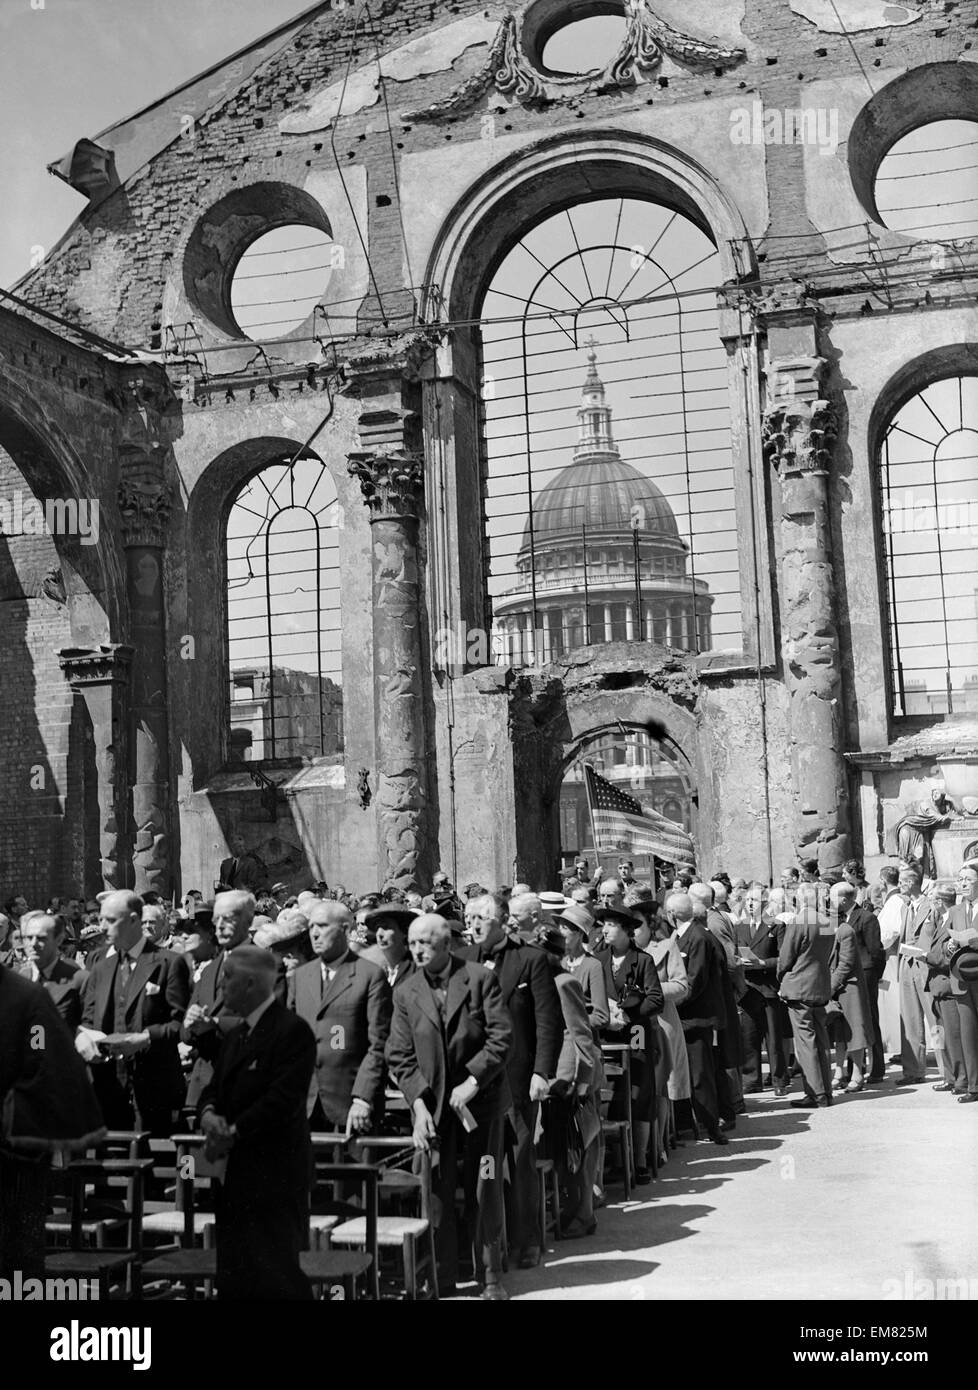 Servicio que se celebró en la iglesia de Santa María y Arco en Londres durante el Blitz ataque de la Luftwaffe alemana. Circa 1940. Foto de stock